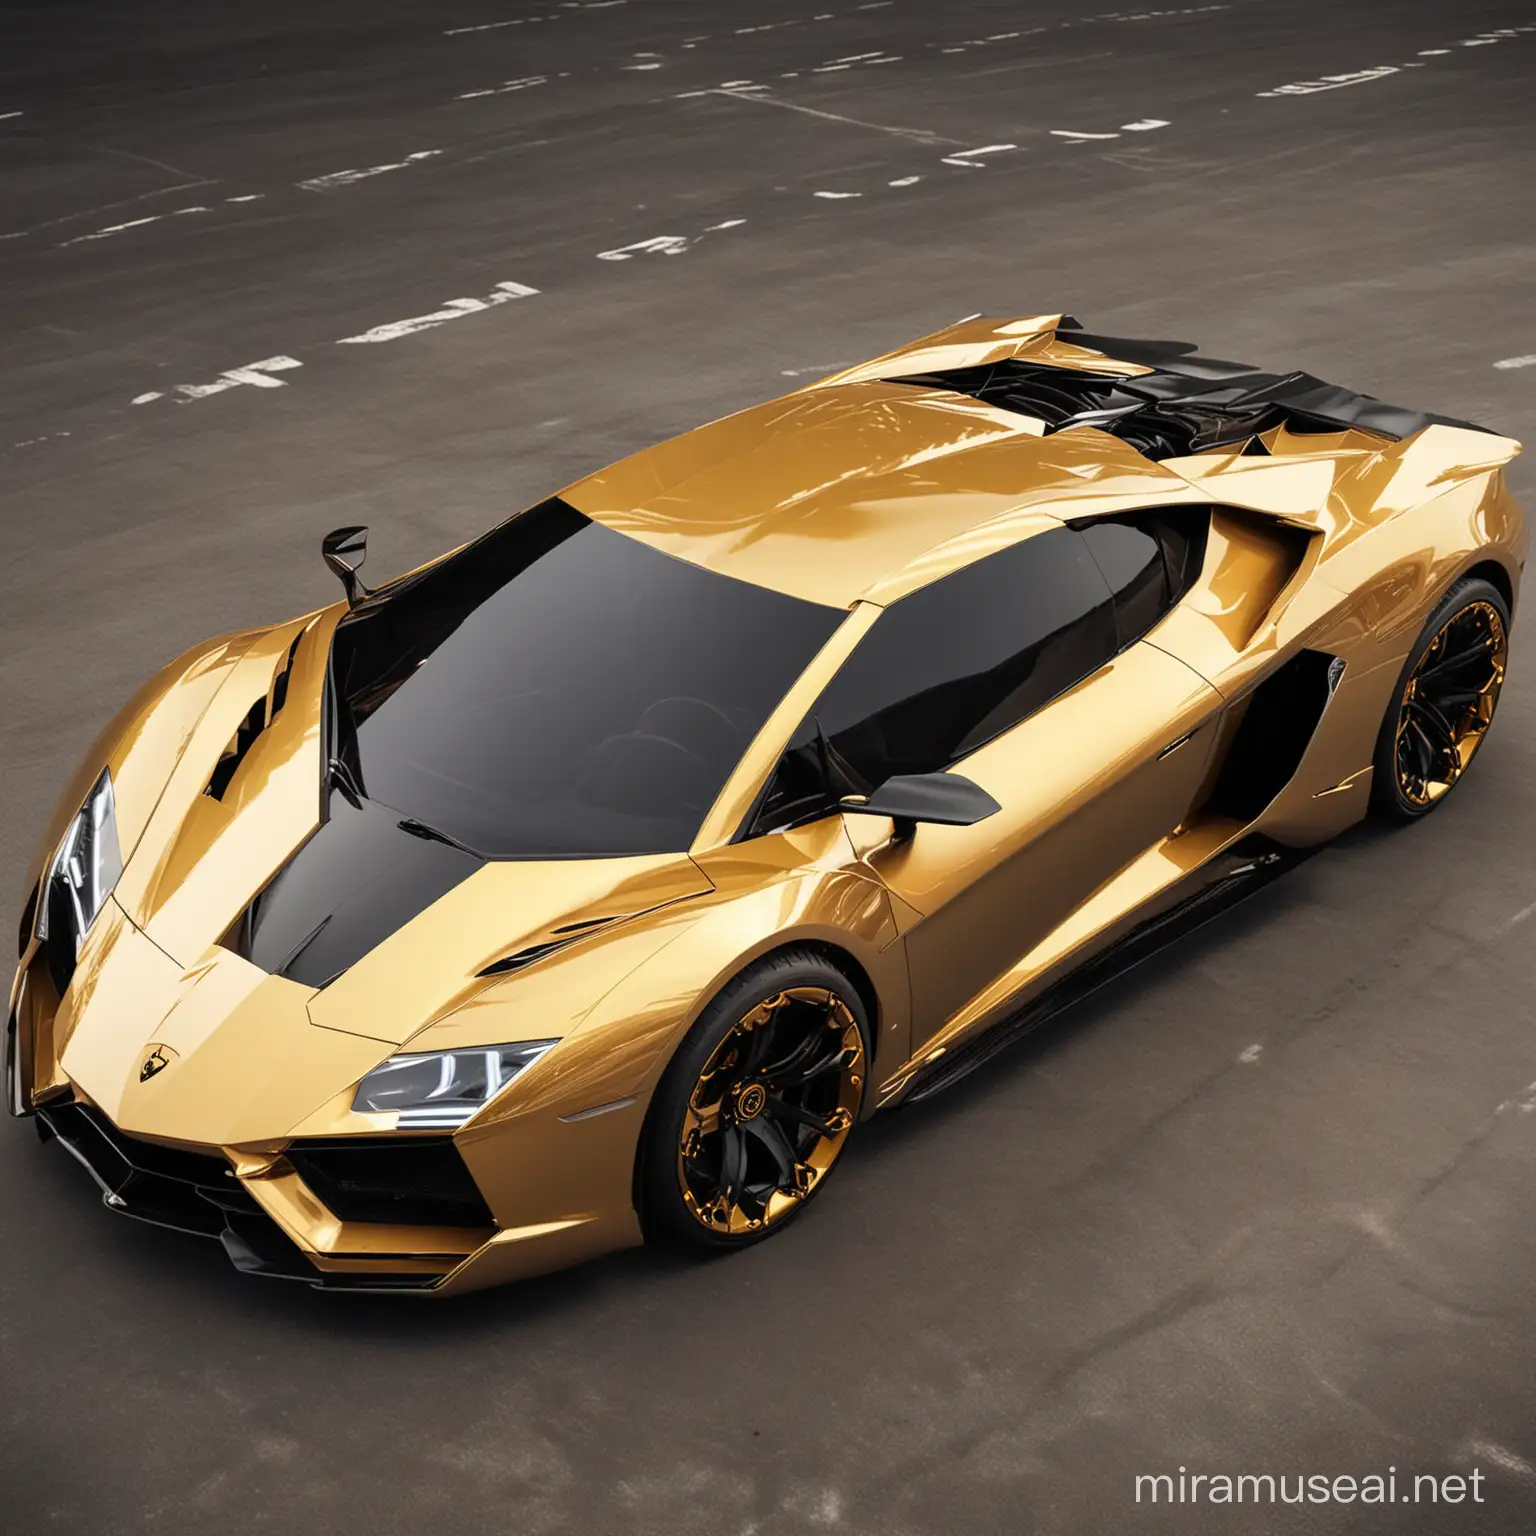 Futuristic Golden Lamborghini Concept Car with Black Accents